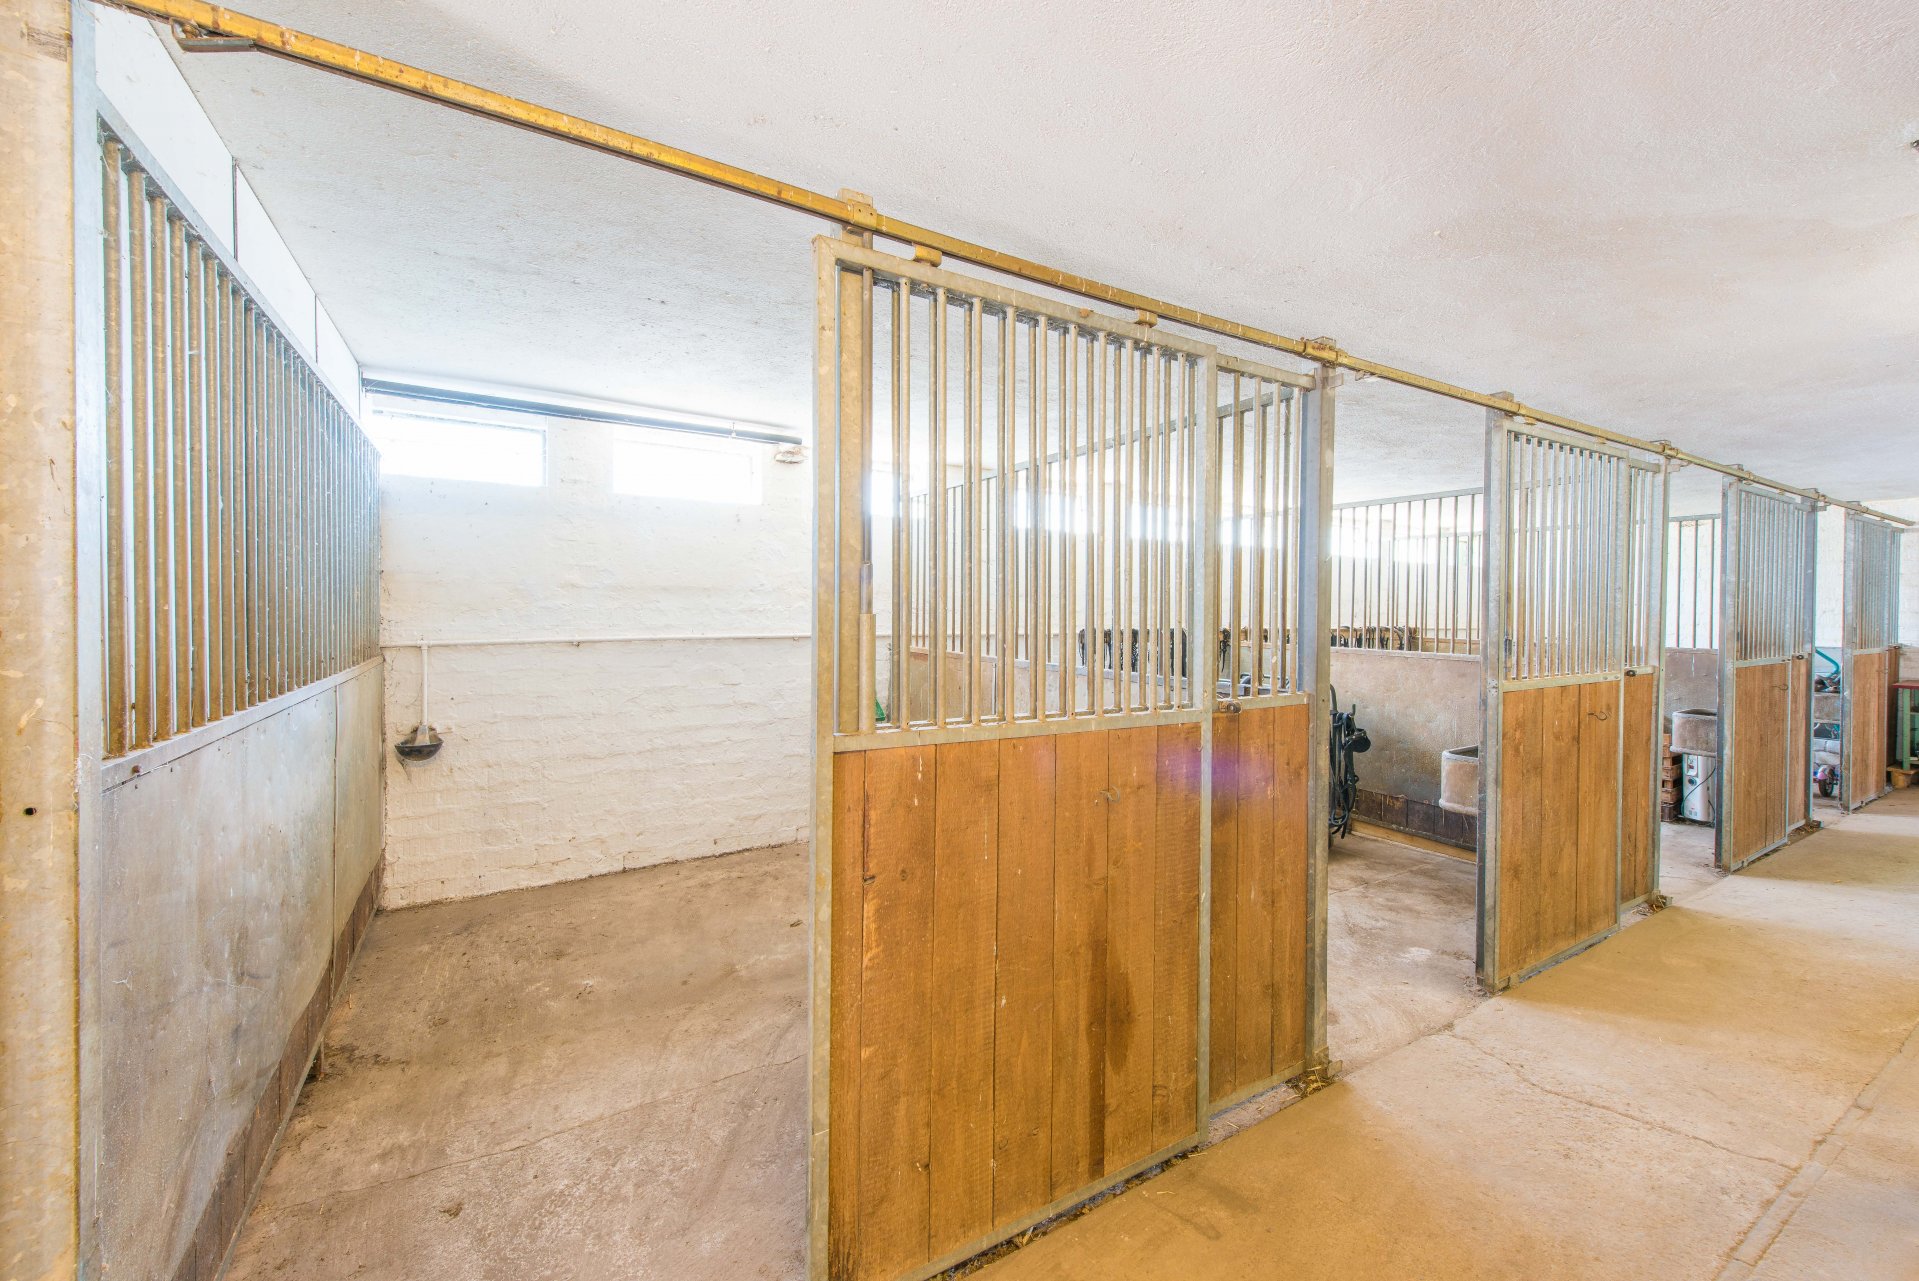 4 gepflegte Pferdeboxen im großen Stall-, Scheunengebäude - Oliver Reifferscheid - Immobilienmakler Darmstadt